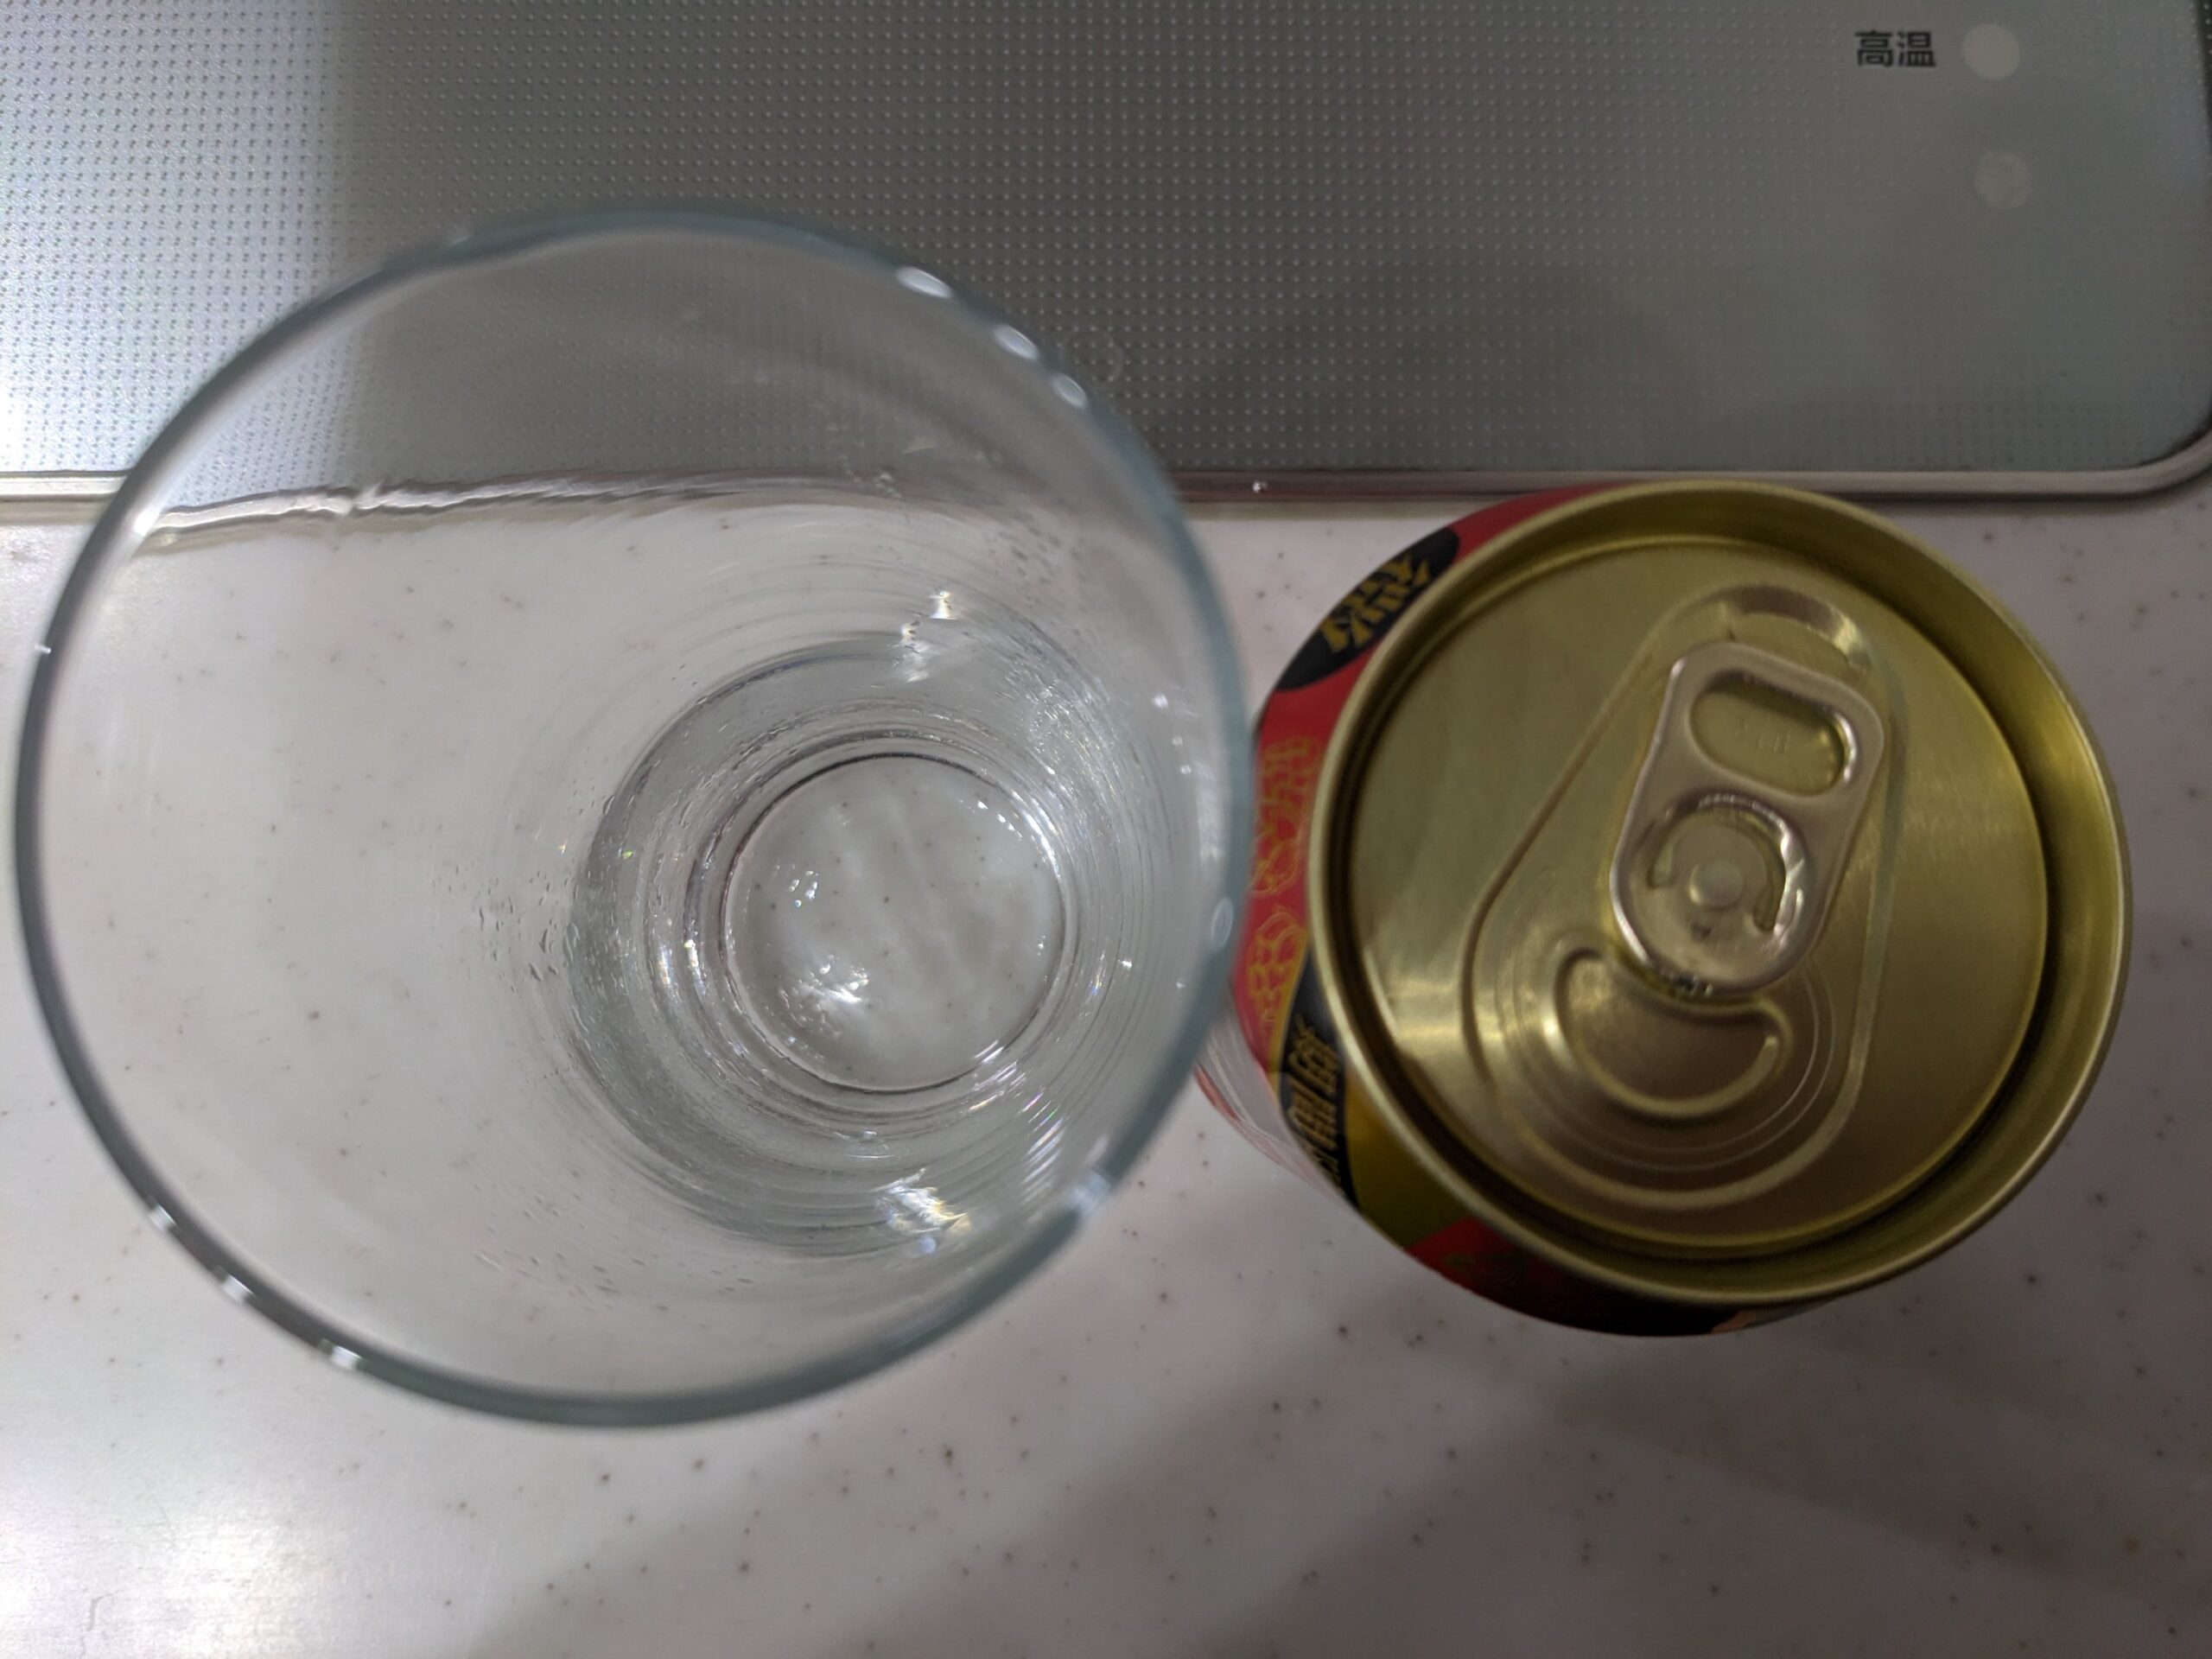 上から見たグラスと缶の「ビアリーアンバーエールスタイル」